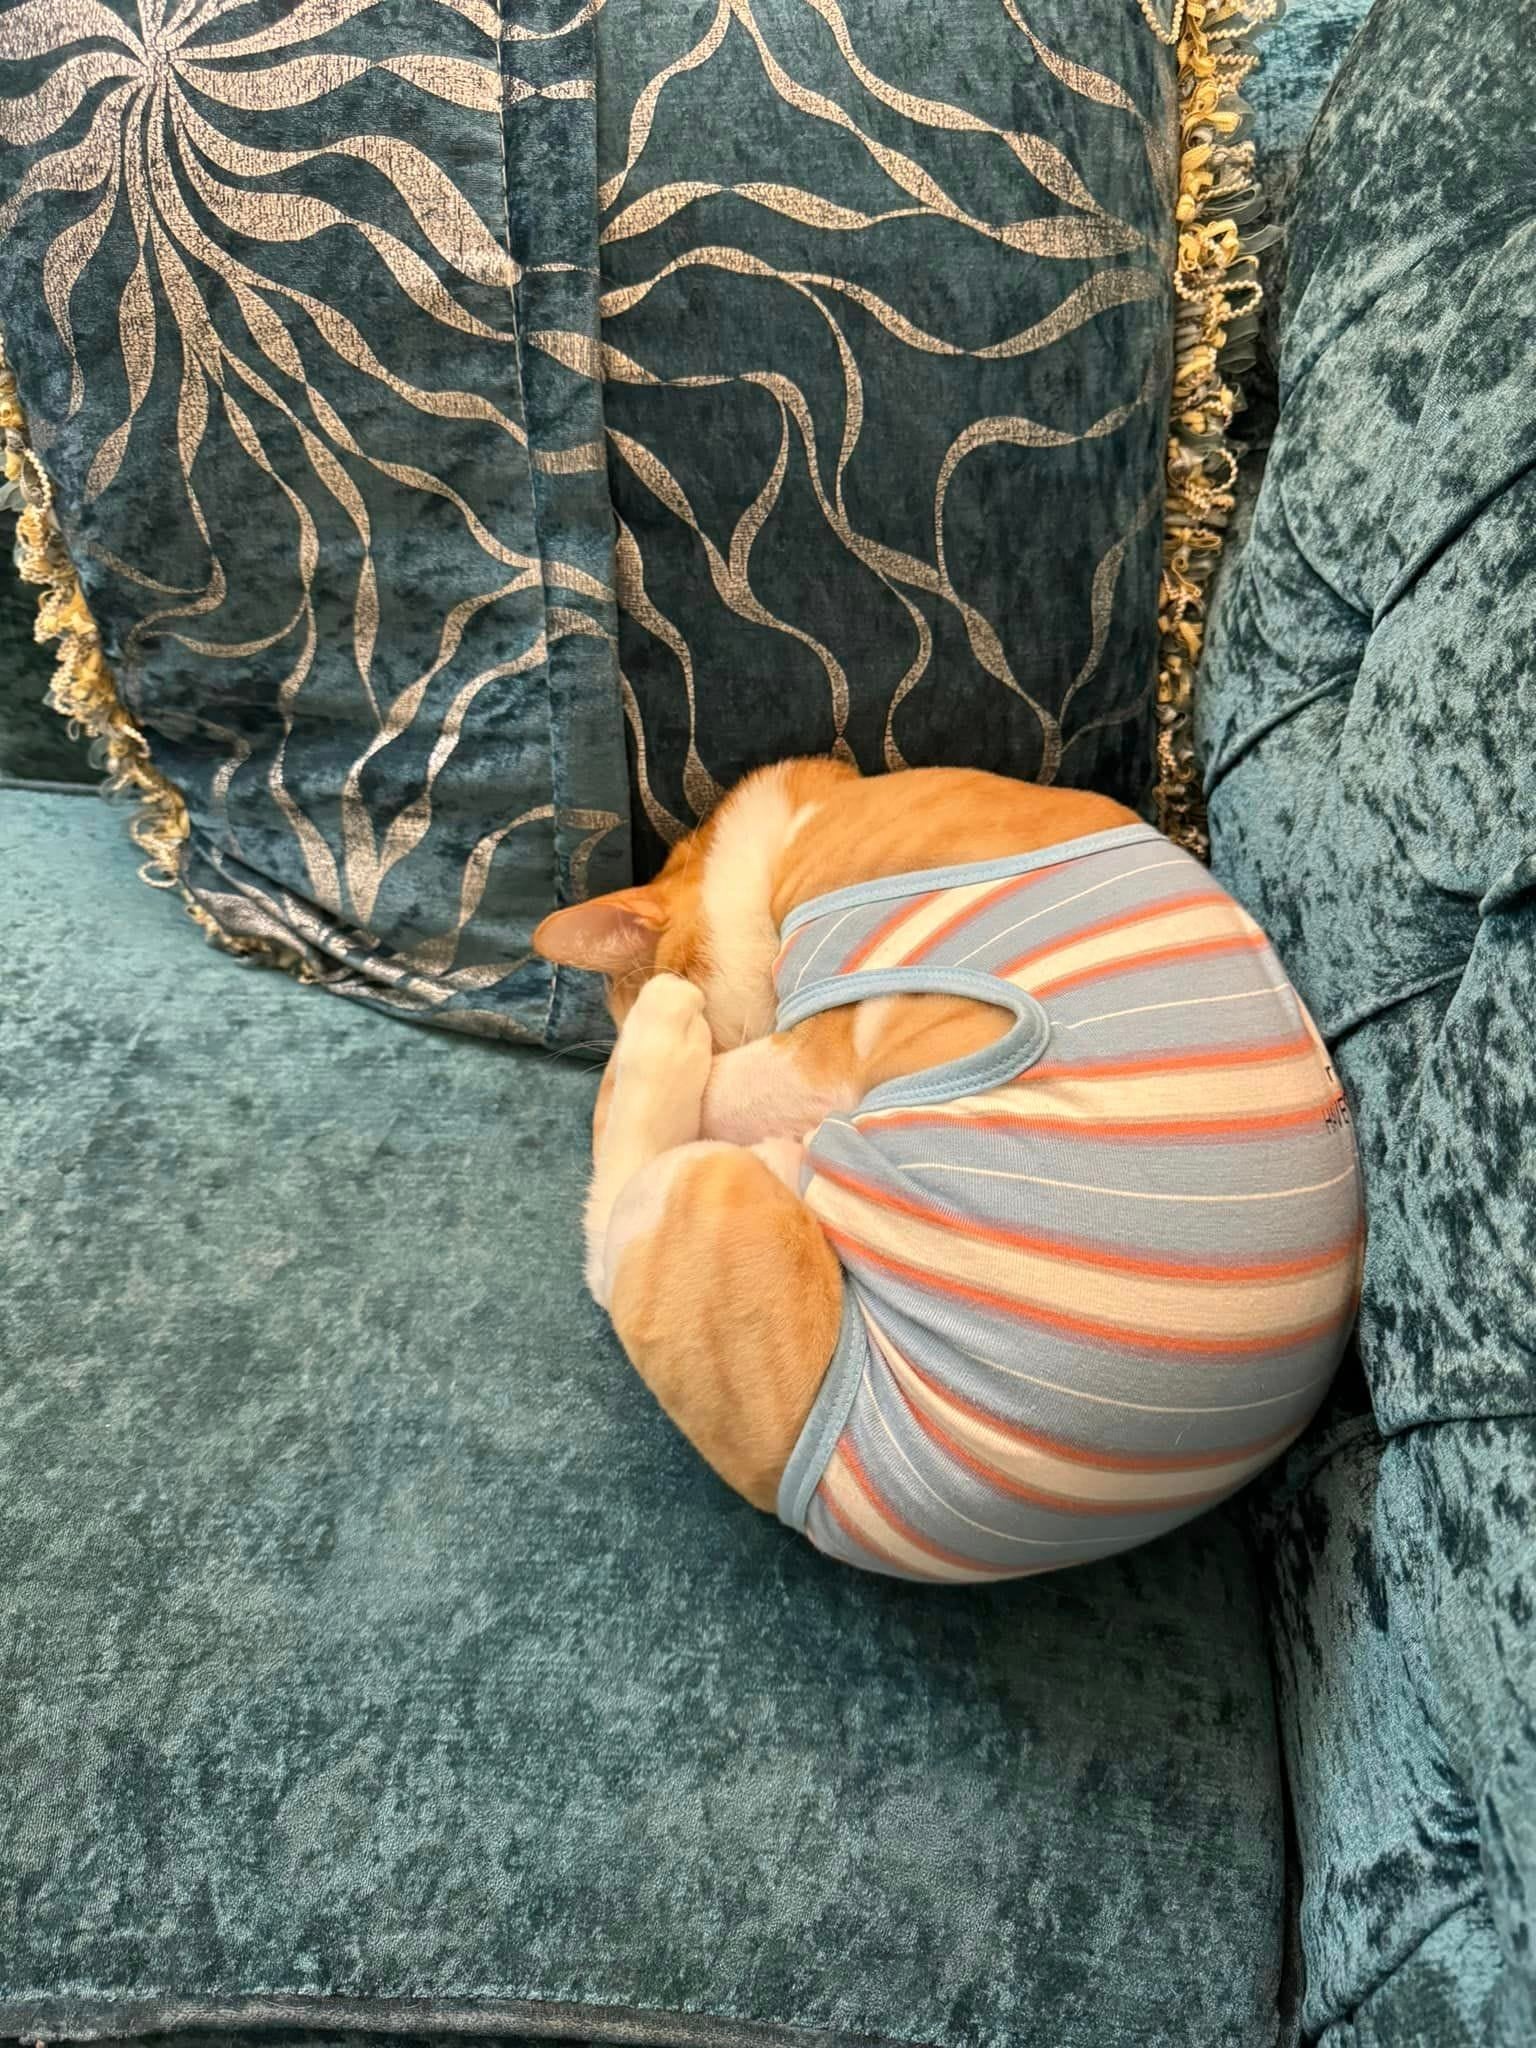 แมวส้มแปลงร่างเป็นหอย